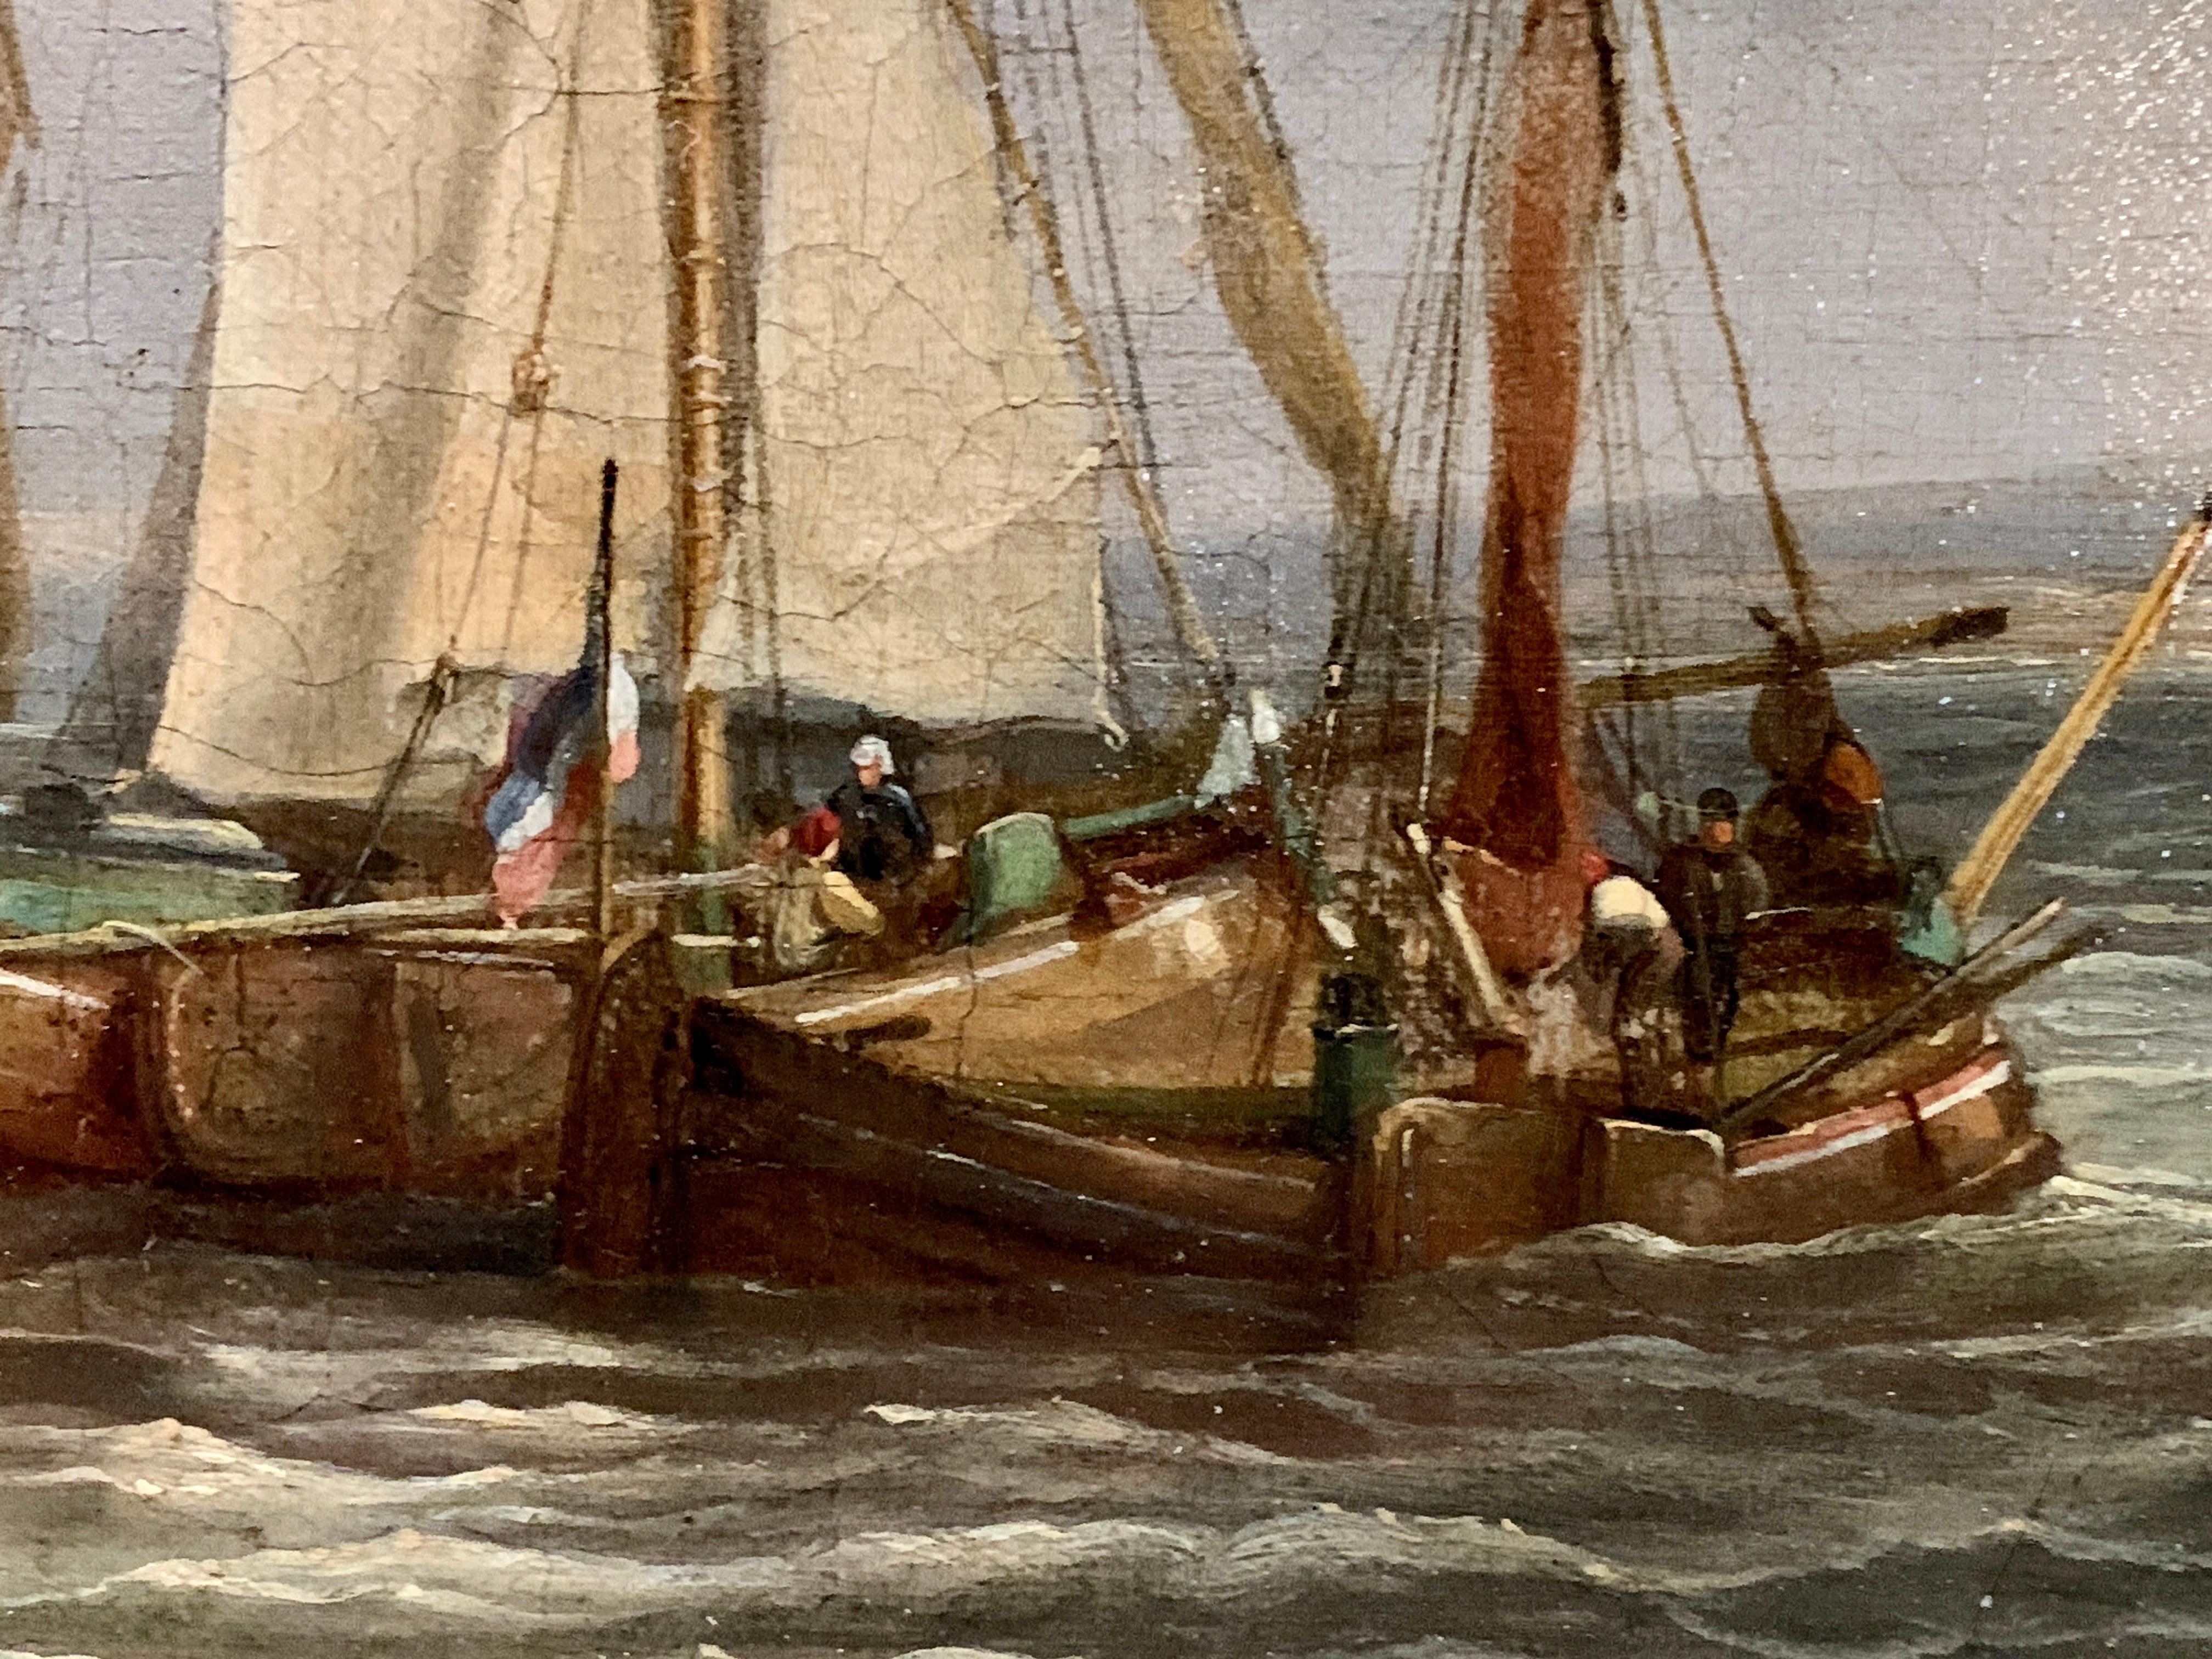 Eine sehr gut gemalte niederländische Marineszene aus dem 19. Das kleine Boot ist voll von Männern, die hart rudern, um zu den größeren Schiffen zu gelangen, möglicherweise um Waren auf die größeren Boote zu bringen oder von ihnen abzuladen. 

Der